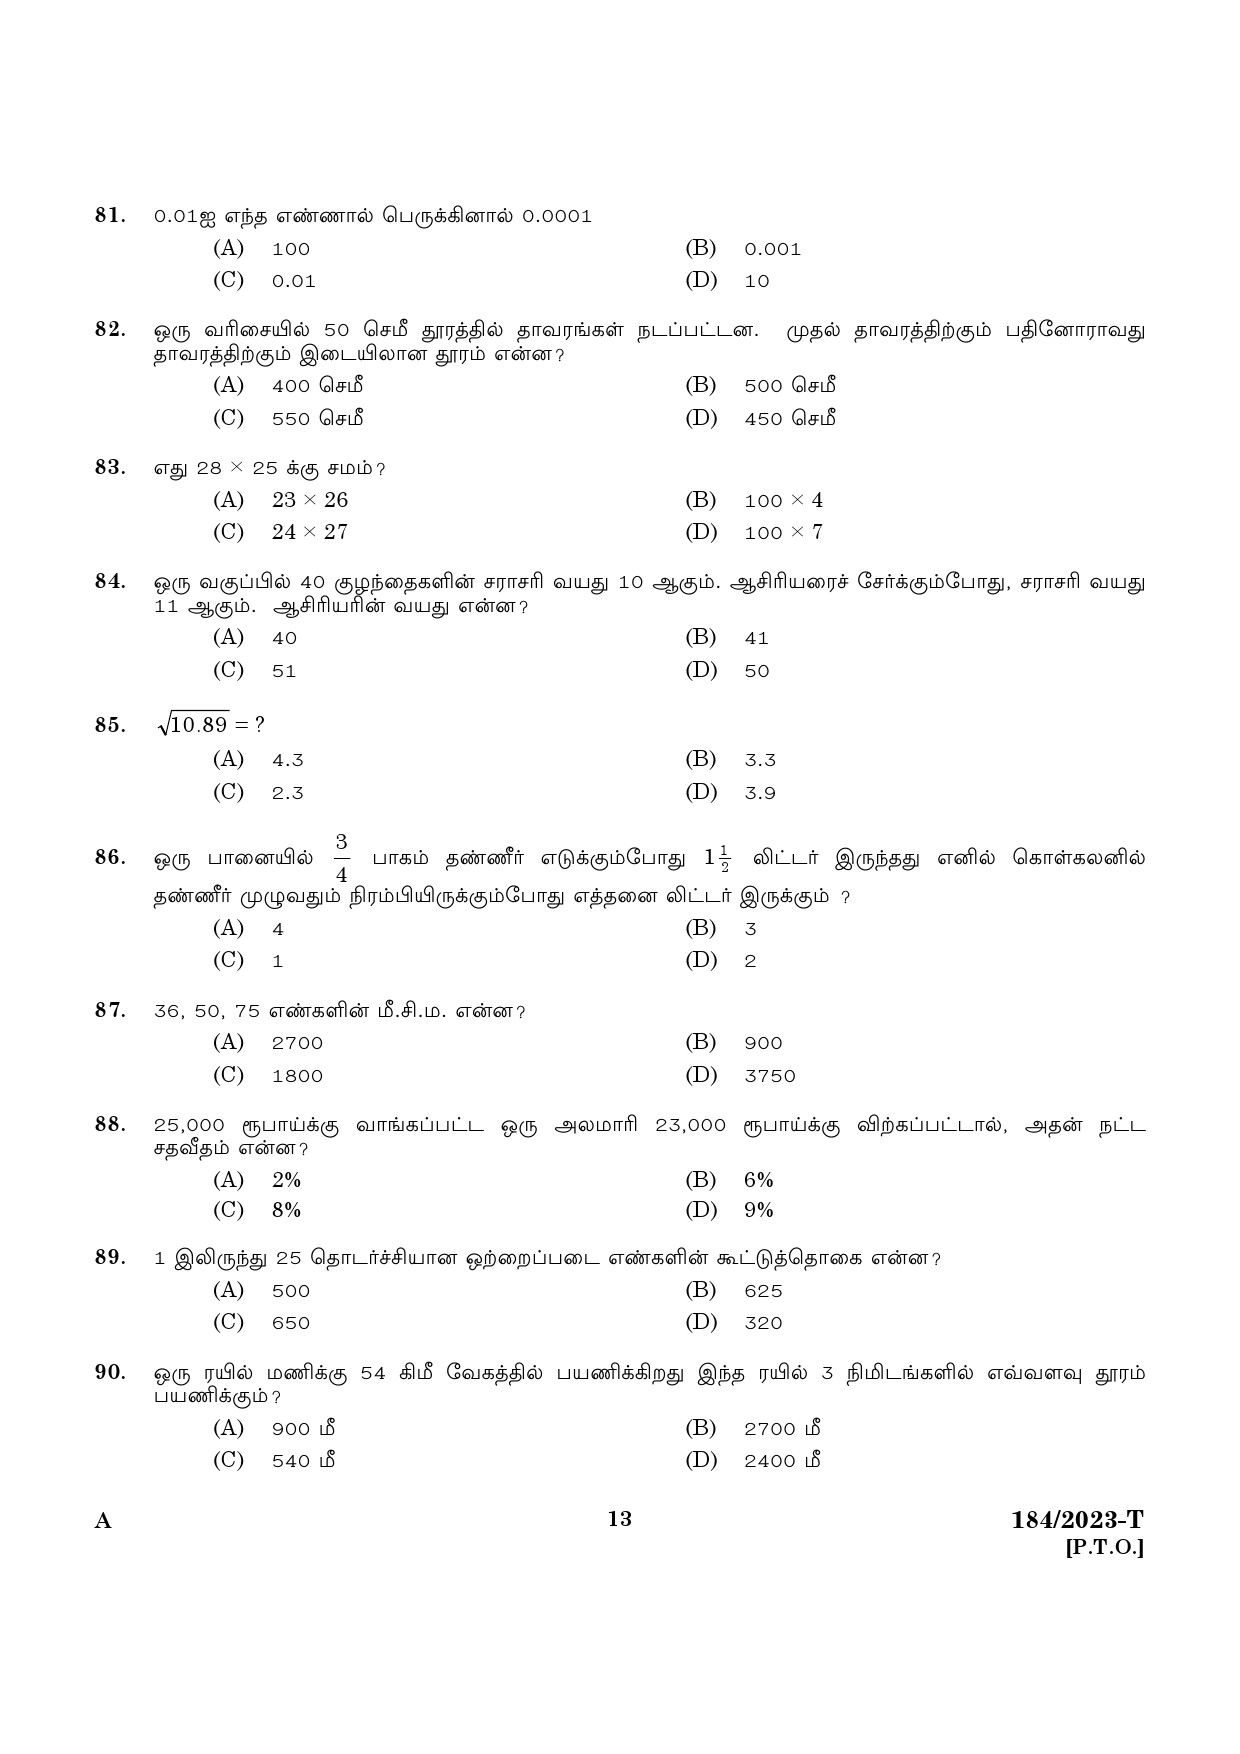 KPSC LGS Tamil Exam 2023 Code 1842023 T 11